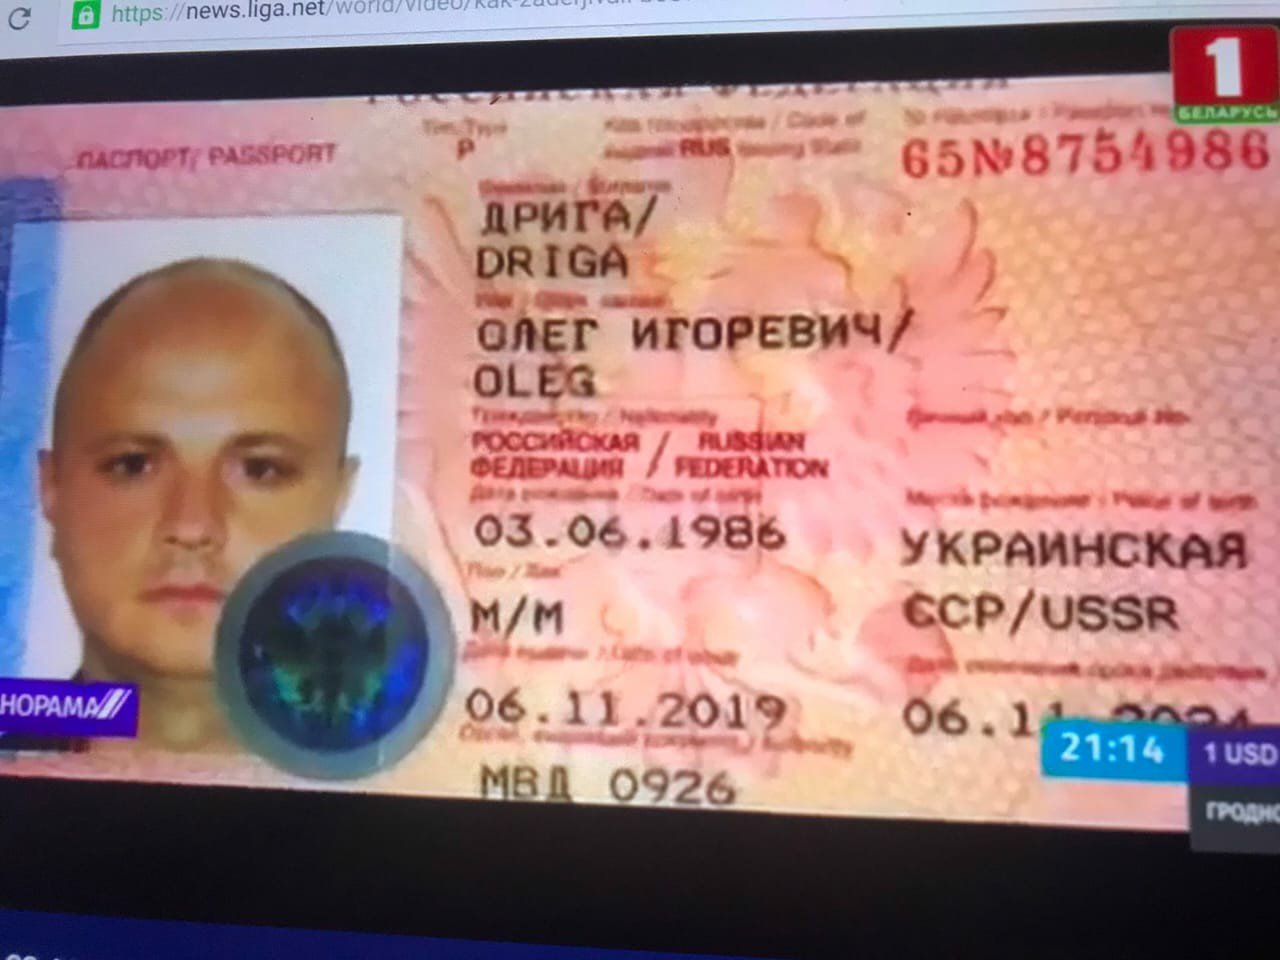 Олег Дрига, паспорт РФ